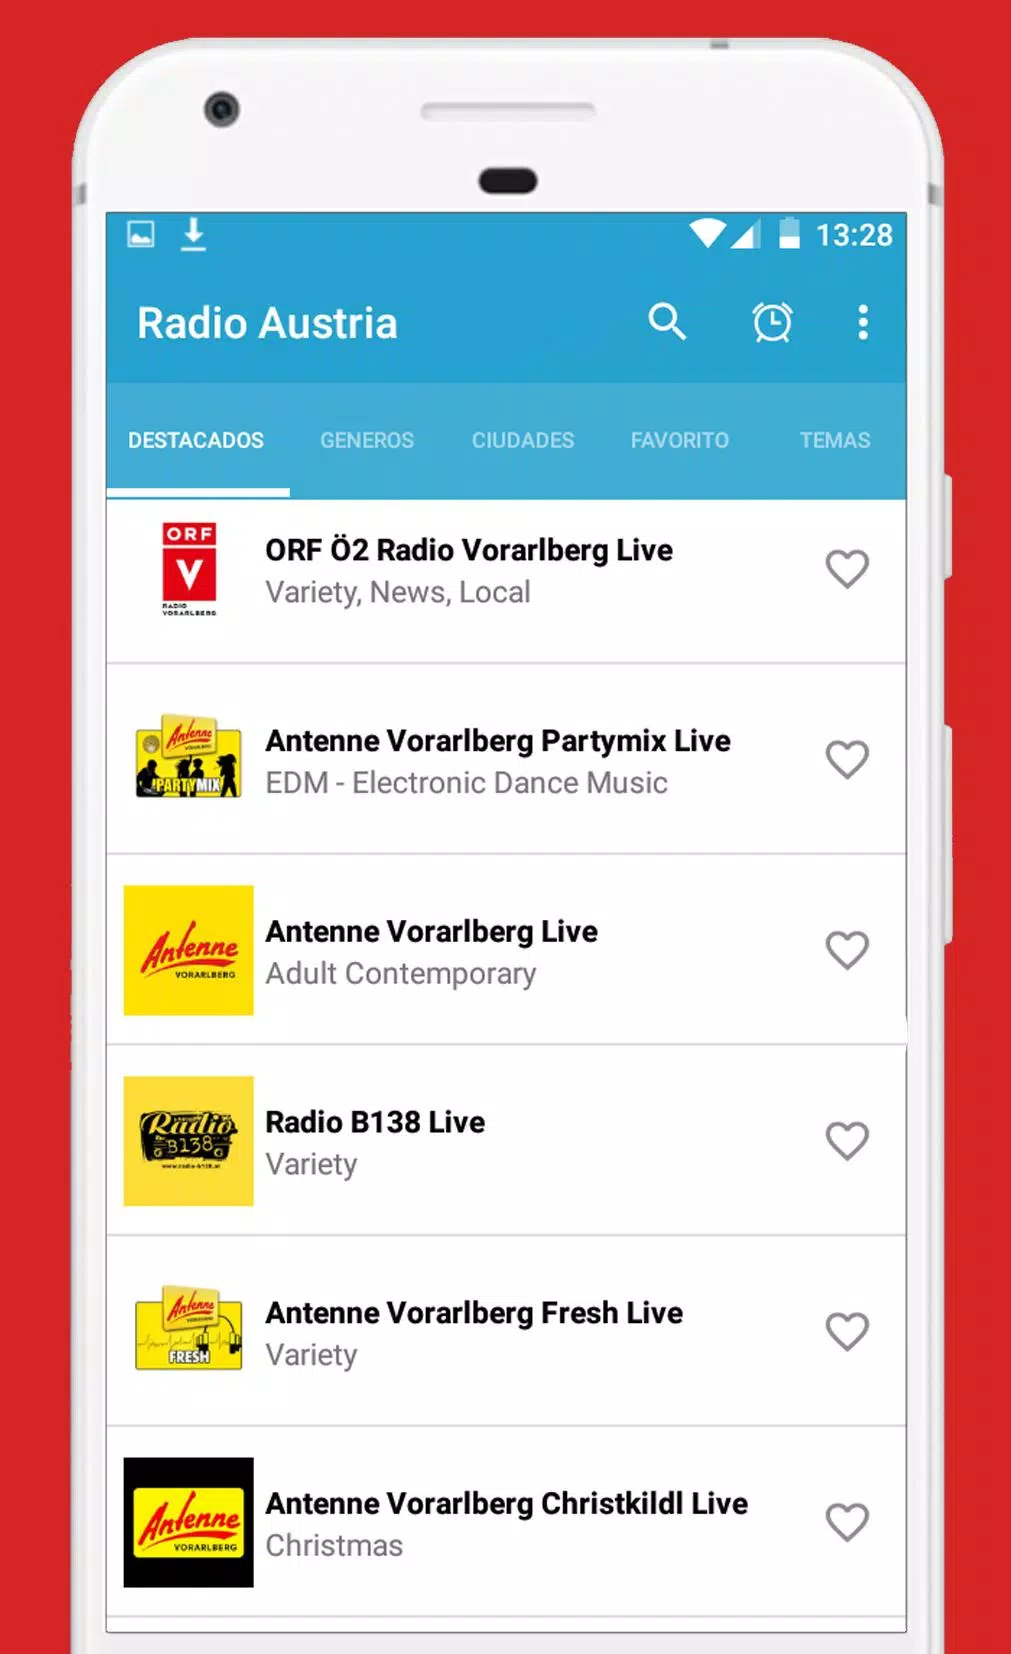 Radio Austria Online - Radio fm Austria for Android - APK Download